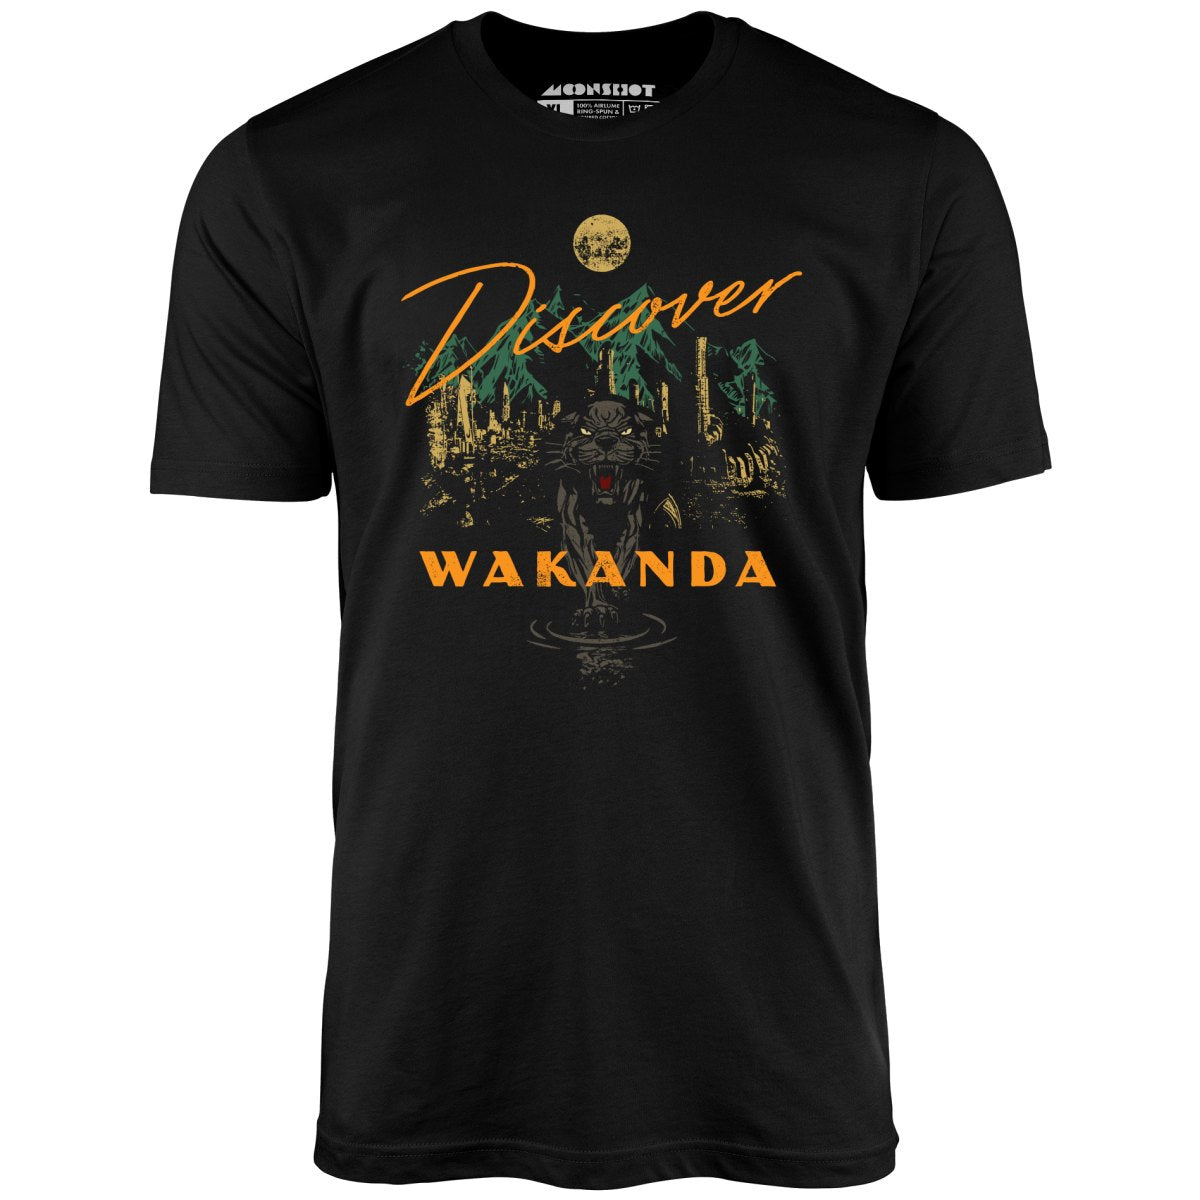 Discover Wakanda - Unisex T-Shirt